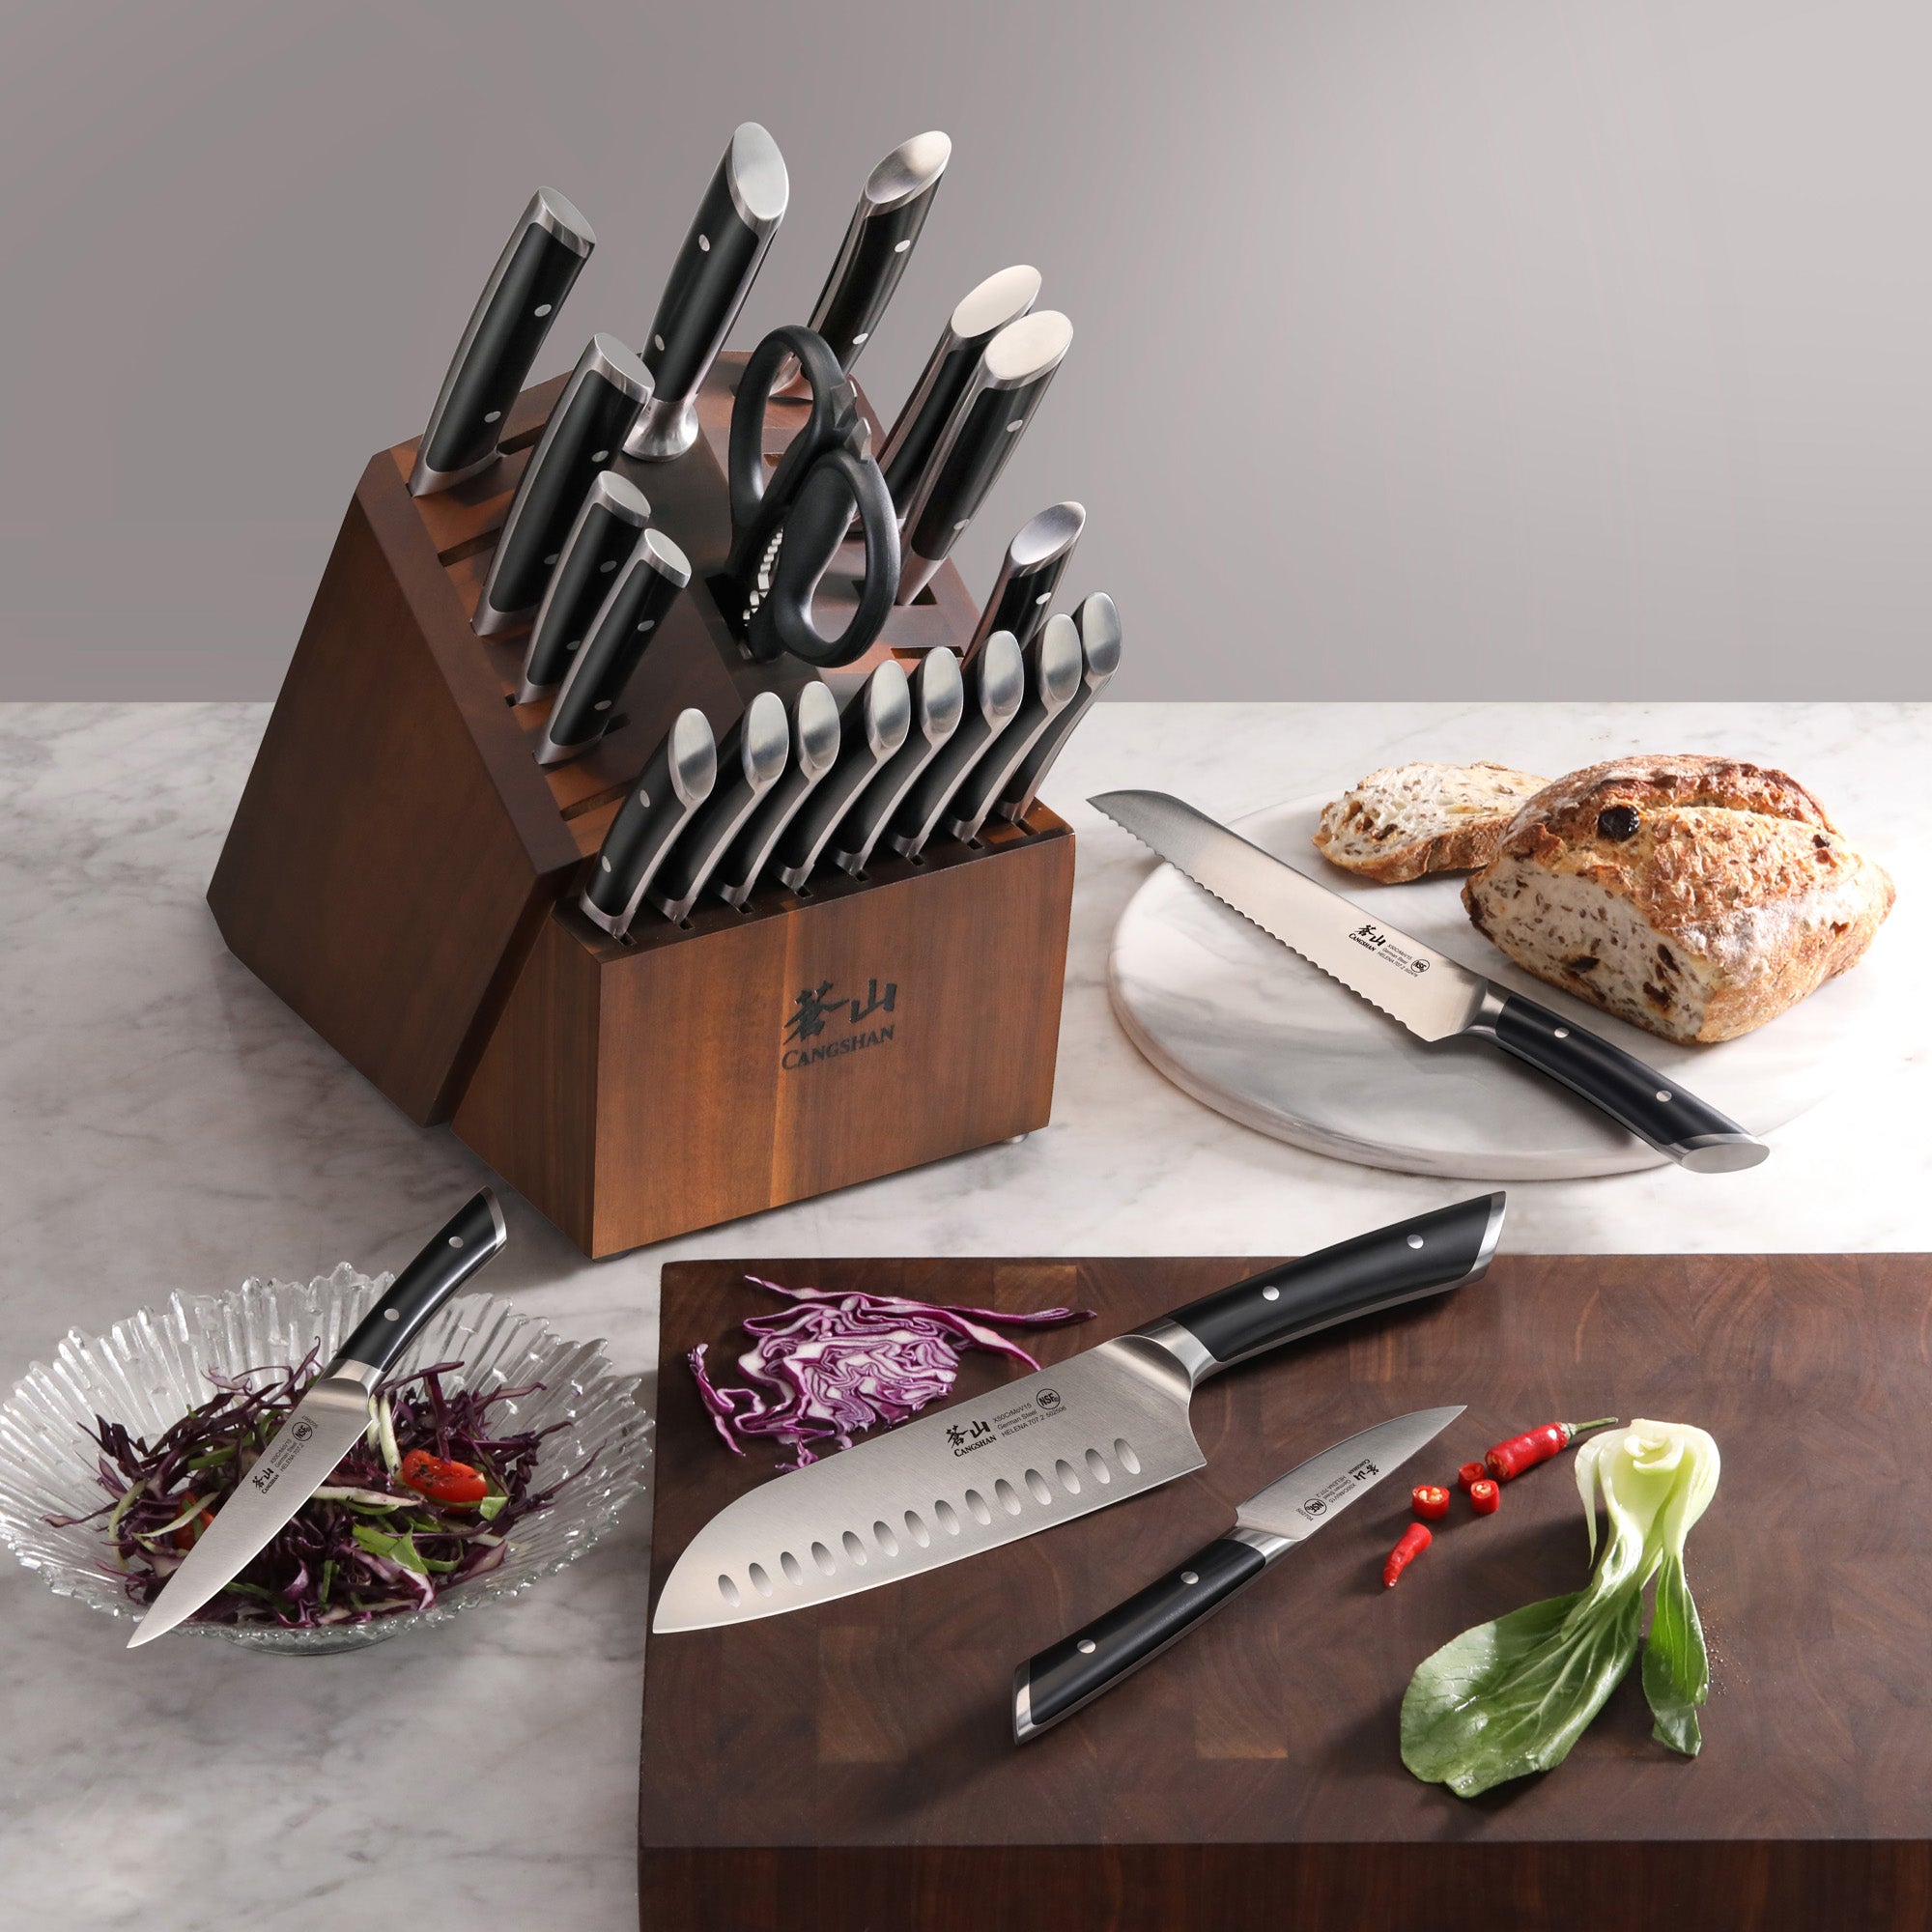 Cangshan HELENA Series German Steel 23-piece Knife Block Set, Black